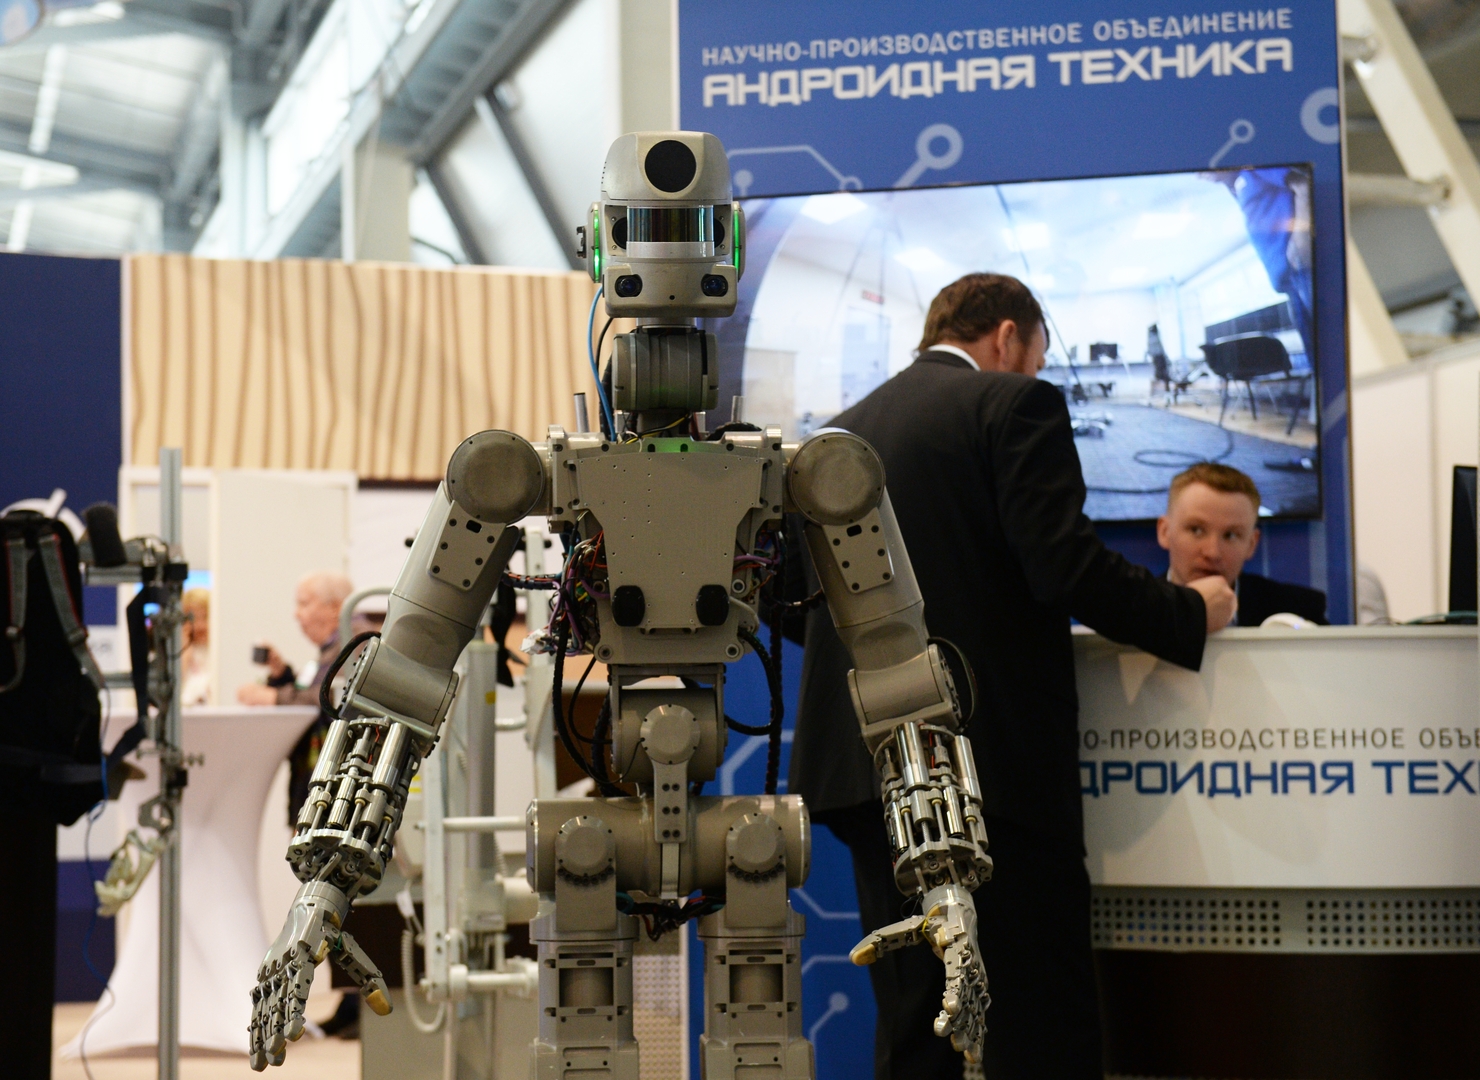 شركة روسية تبدأ العمل على صناعة روبوت لإرساله إلى الفضاء المفتوح